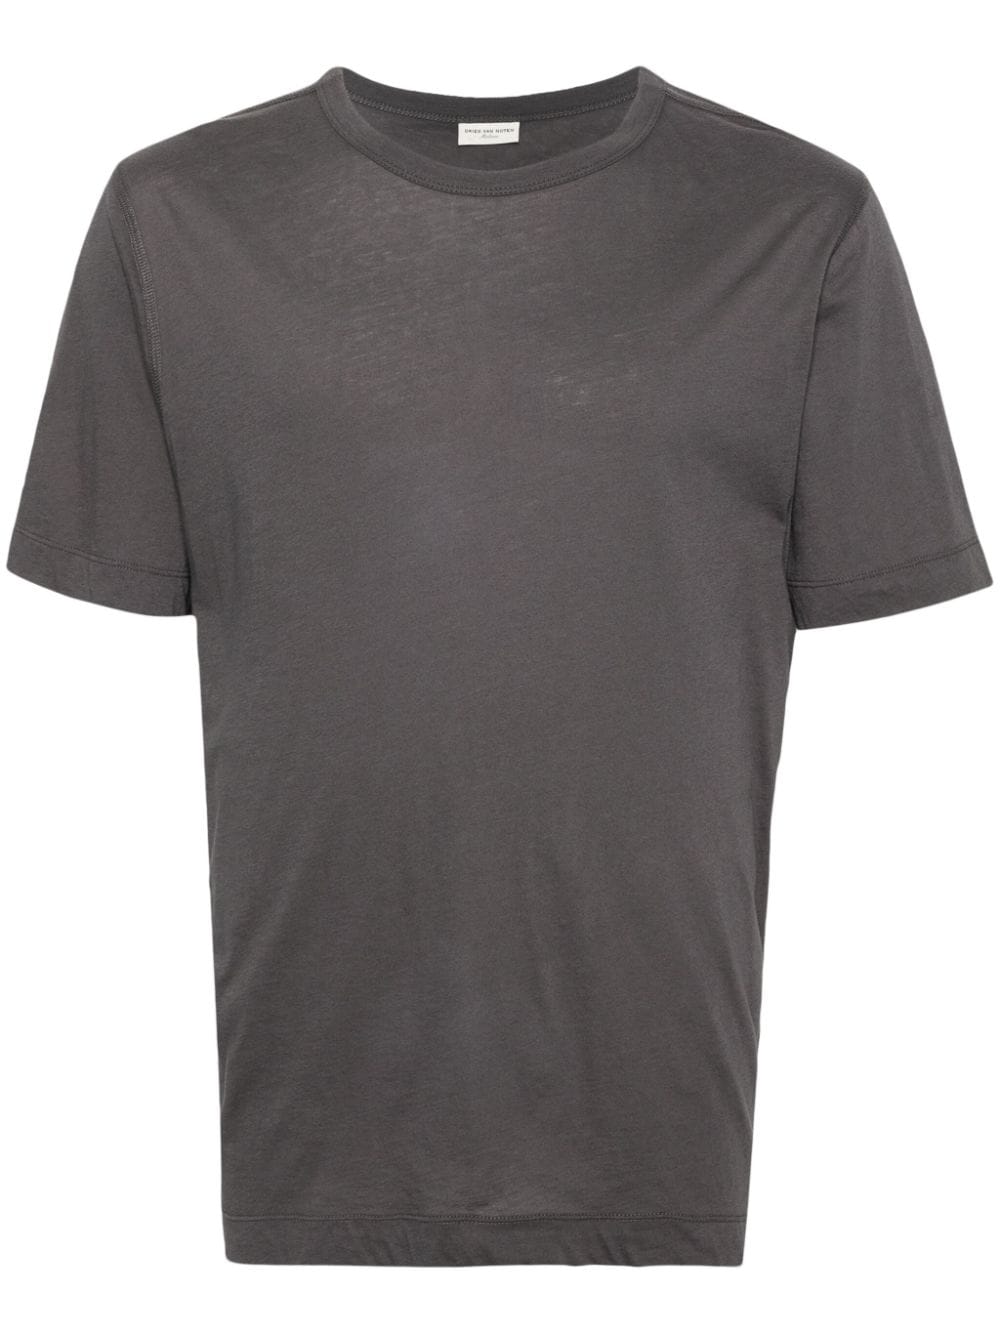 dries van noten t-shirt en coton à col rond - gris